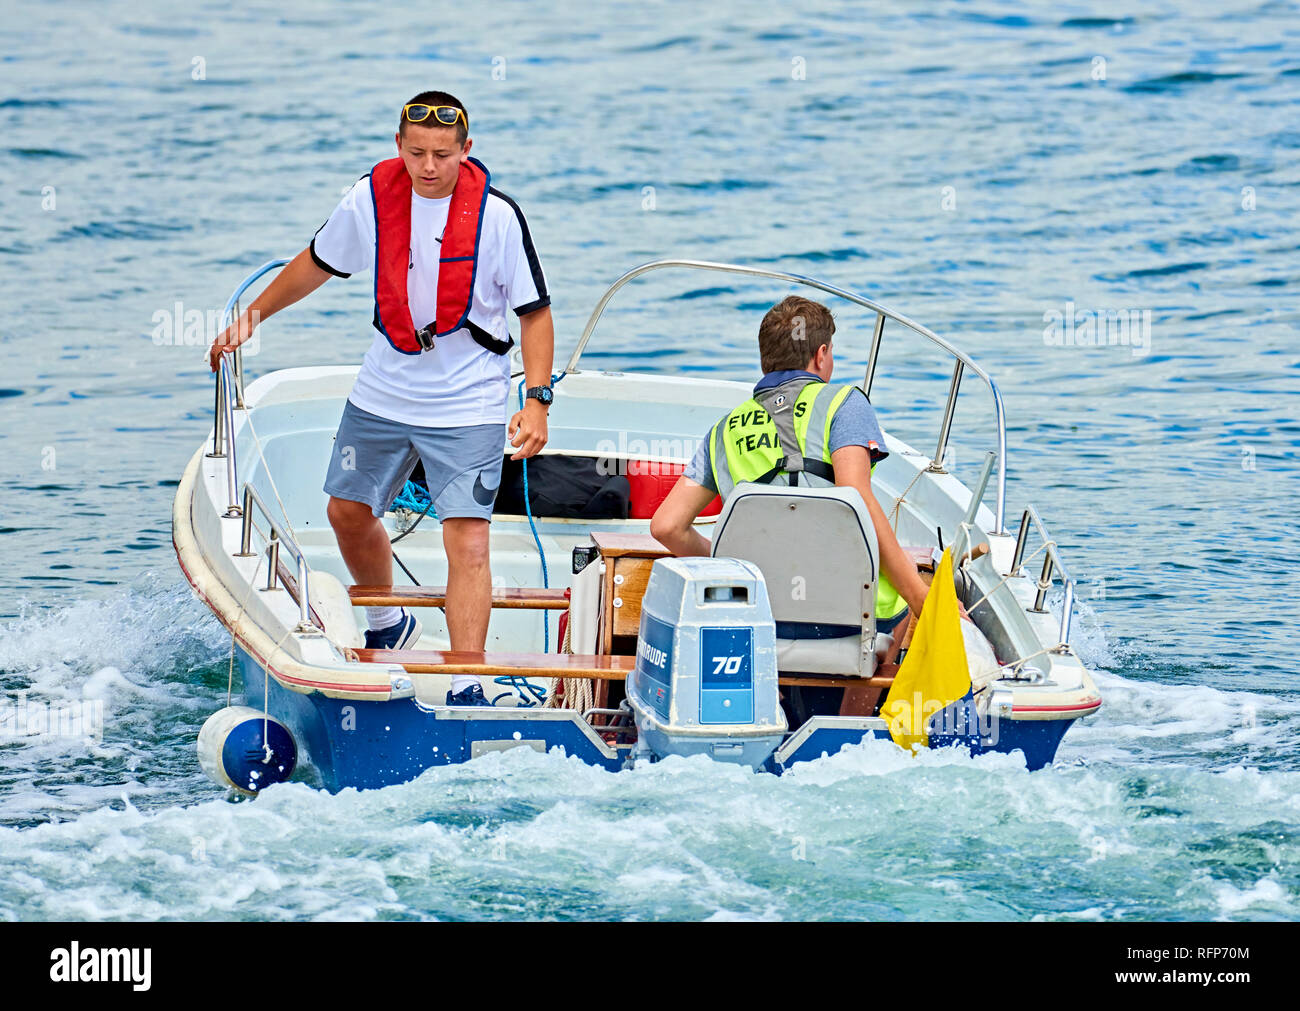 Zwei junge Männer betreiben eine kleine Sicherheit Boot an einer wässrigen Ereignis. Stockfoto